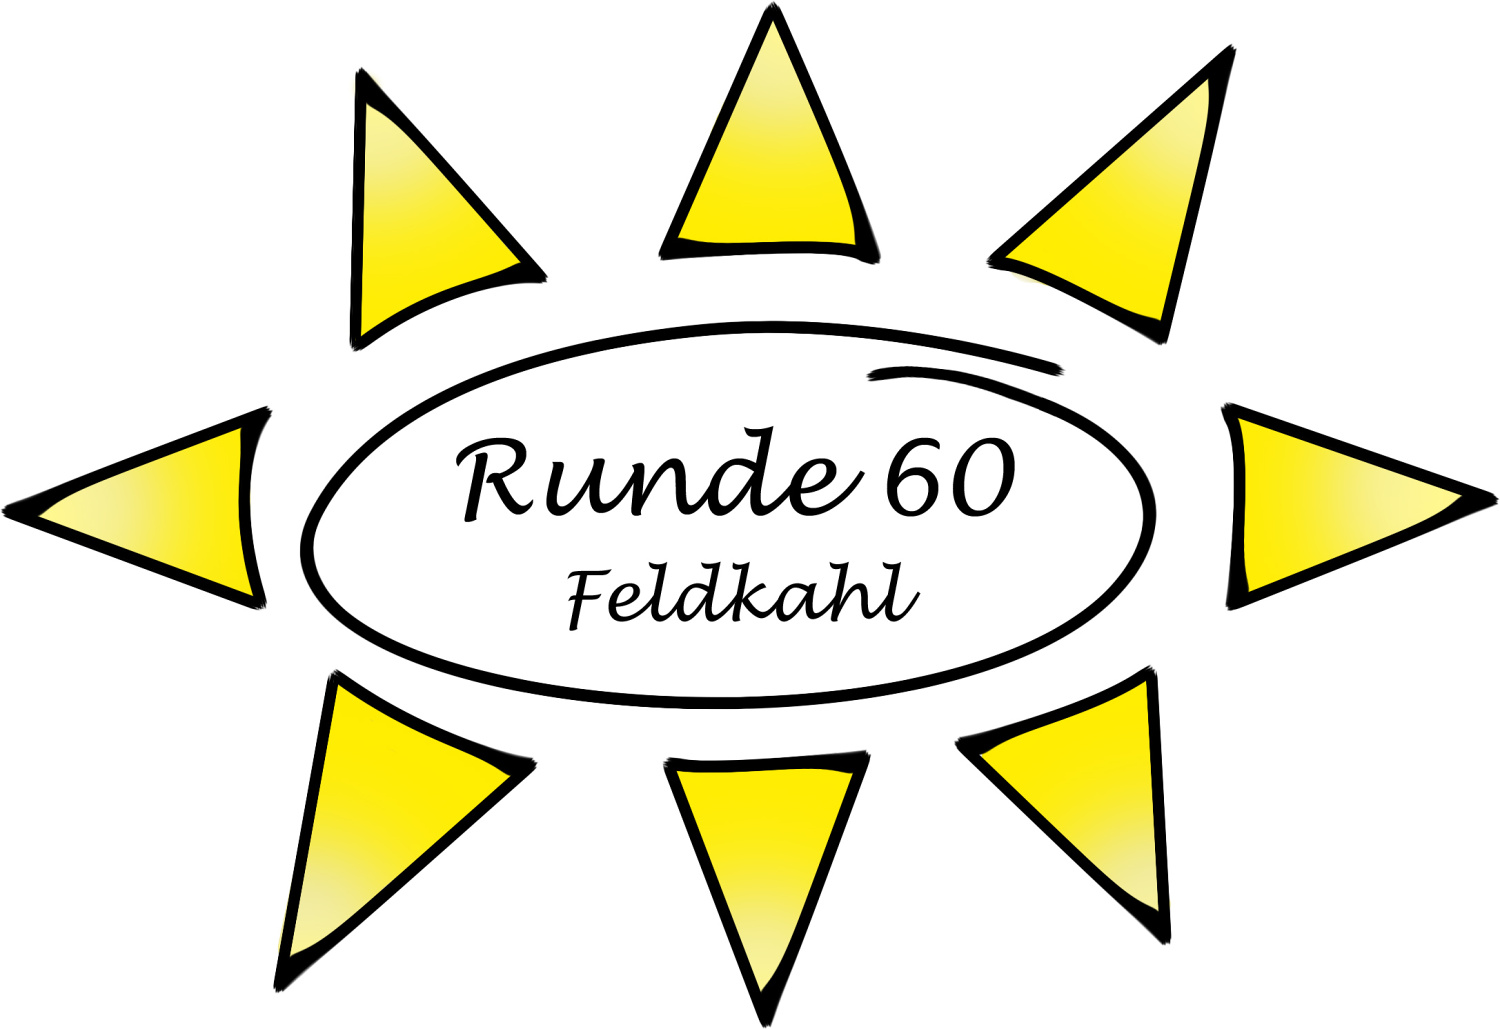 feldkahl logo runde 60